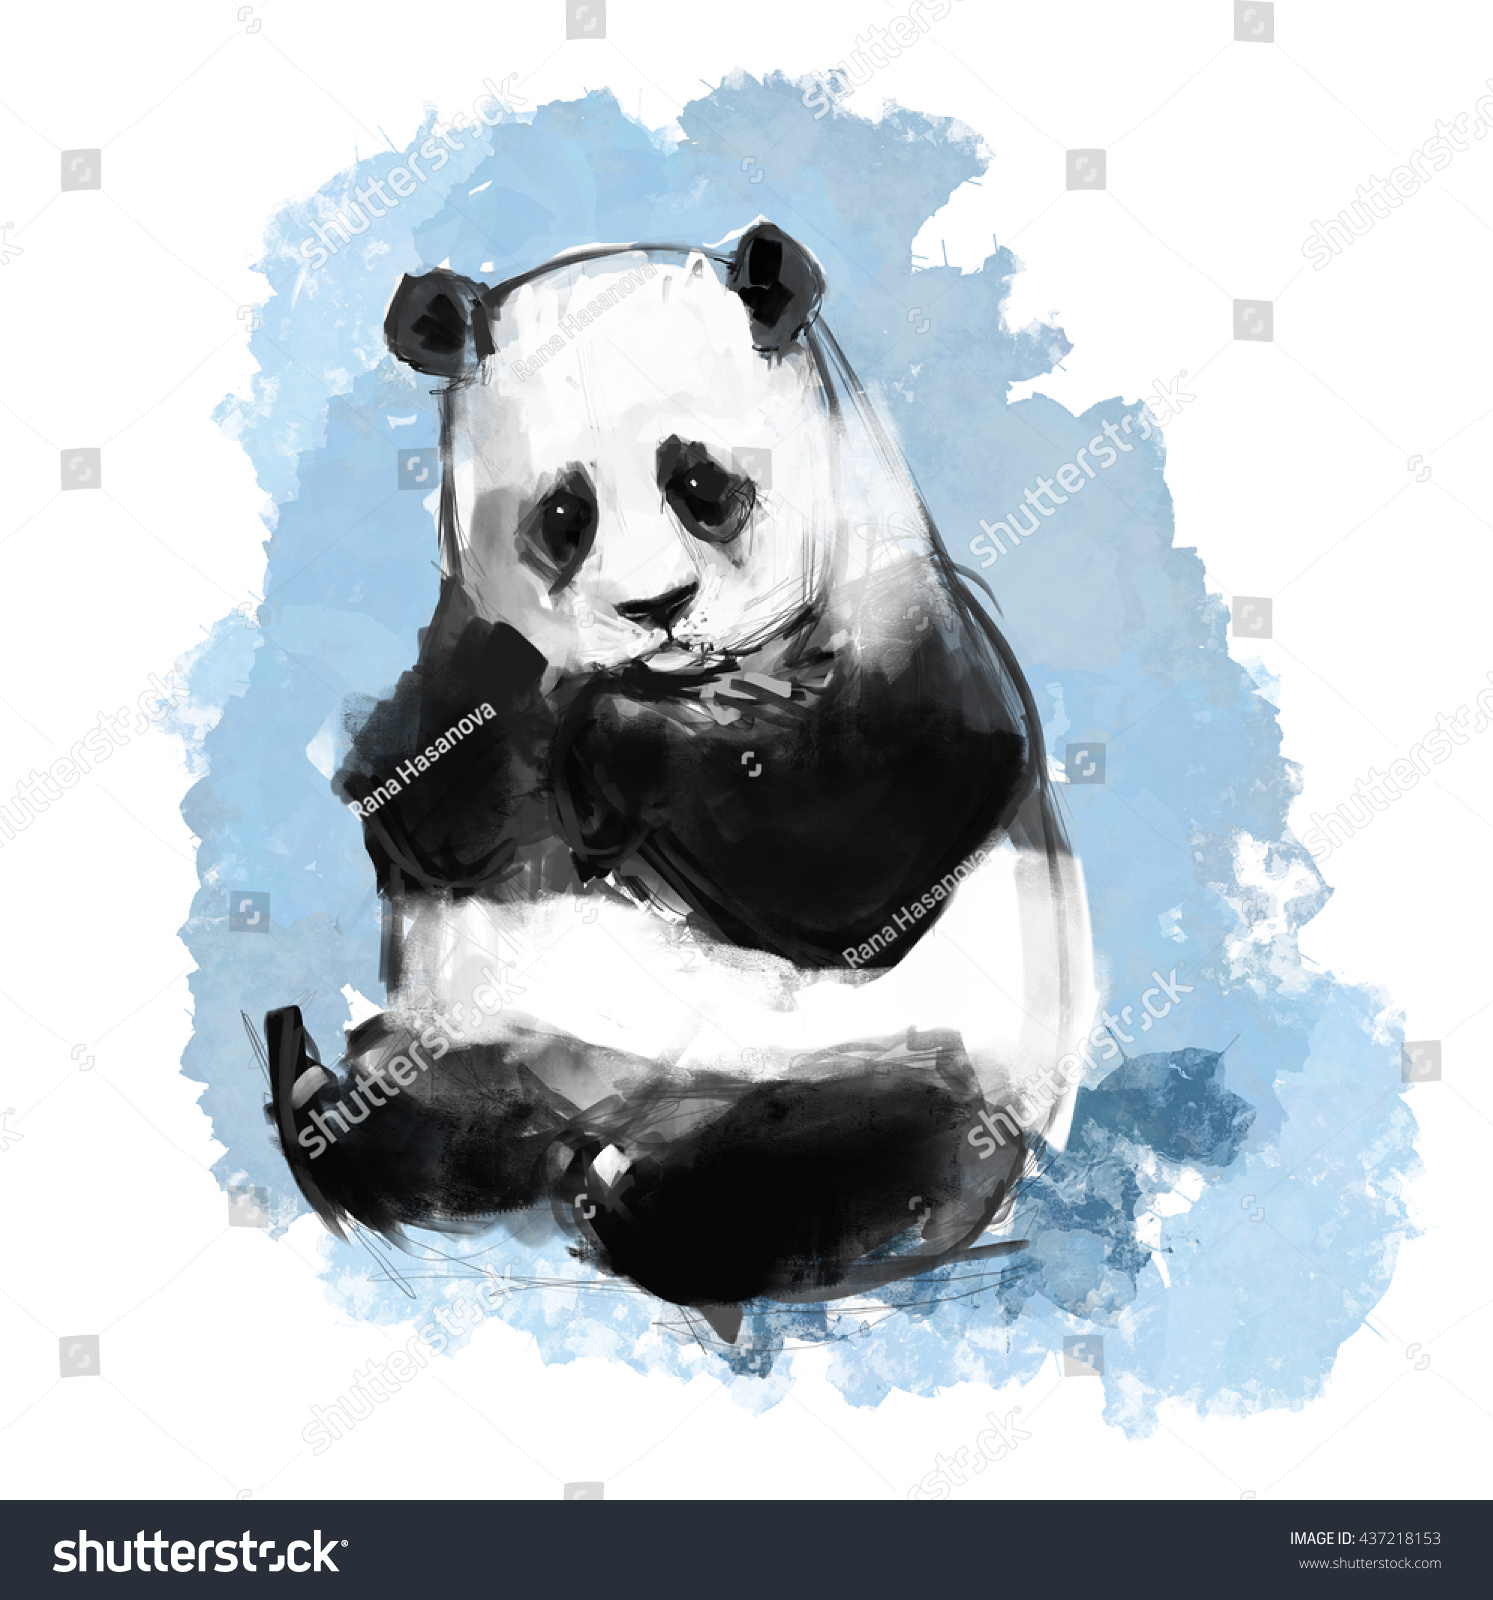 Giant Panda Art Illustration Blue Sky Stock Illustration 437218153 ...